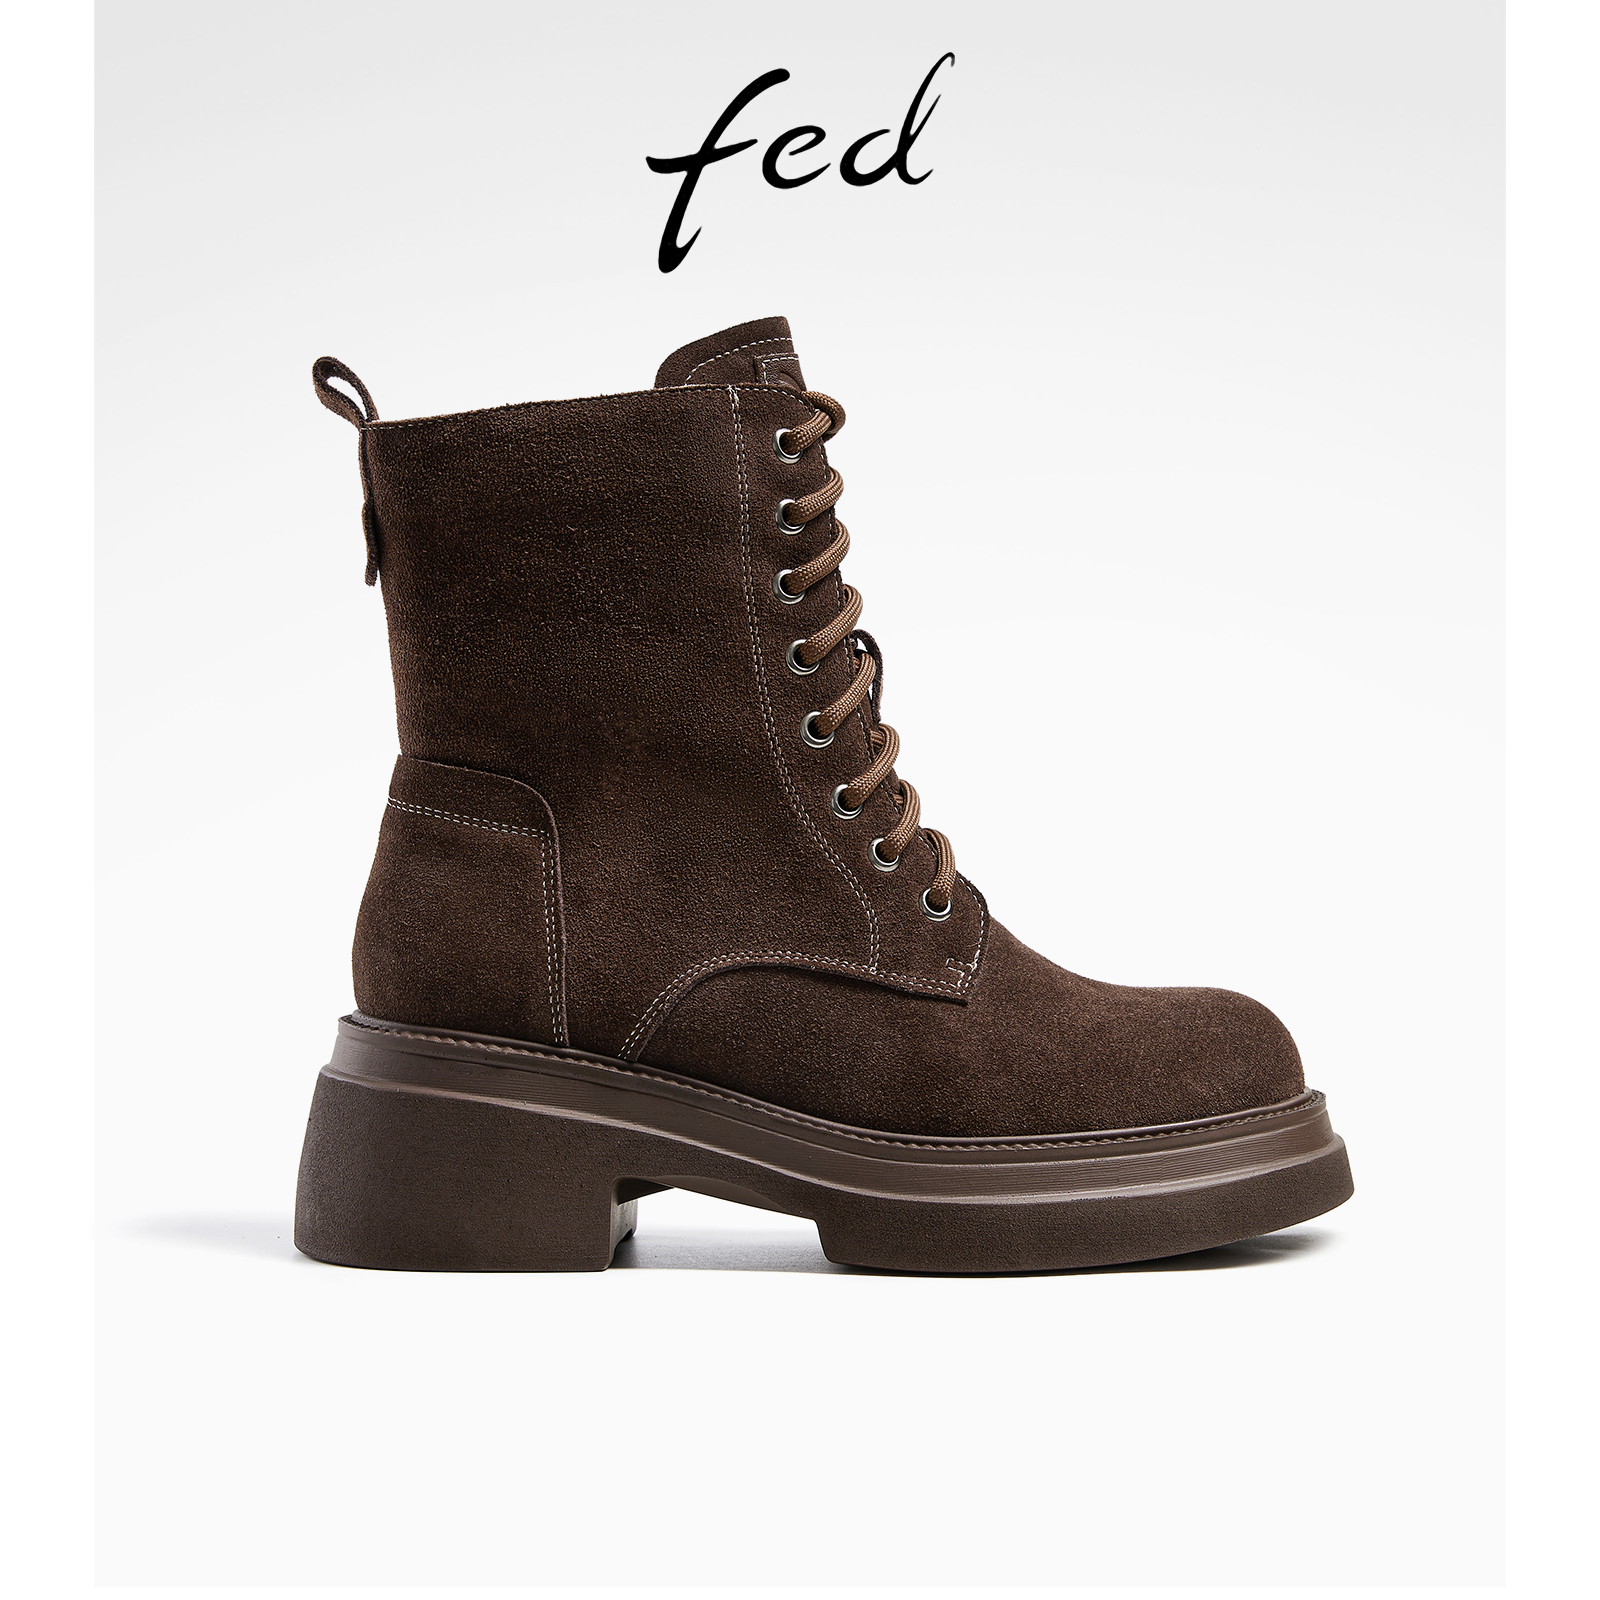 fed复古马丁靴冬季新款靴子厚底短靴粗跟机车靴女款R1004-ZFA908